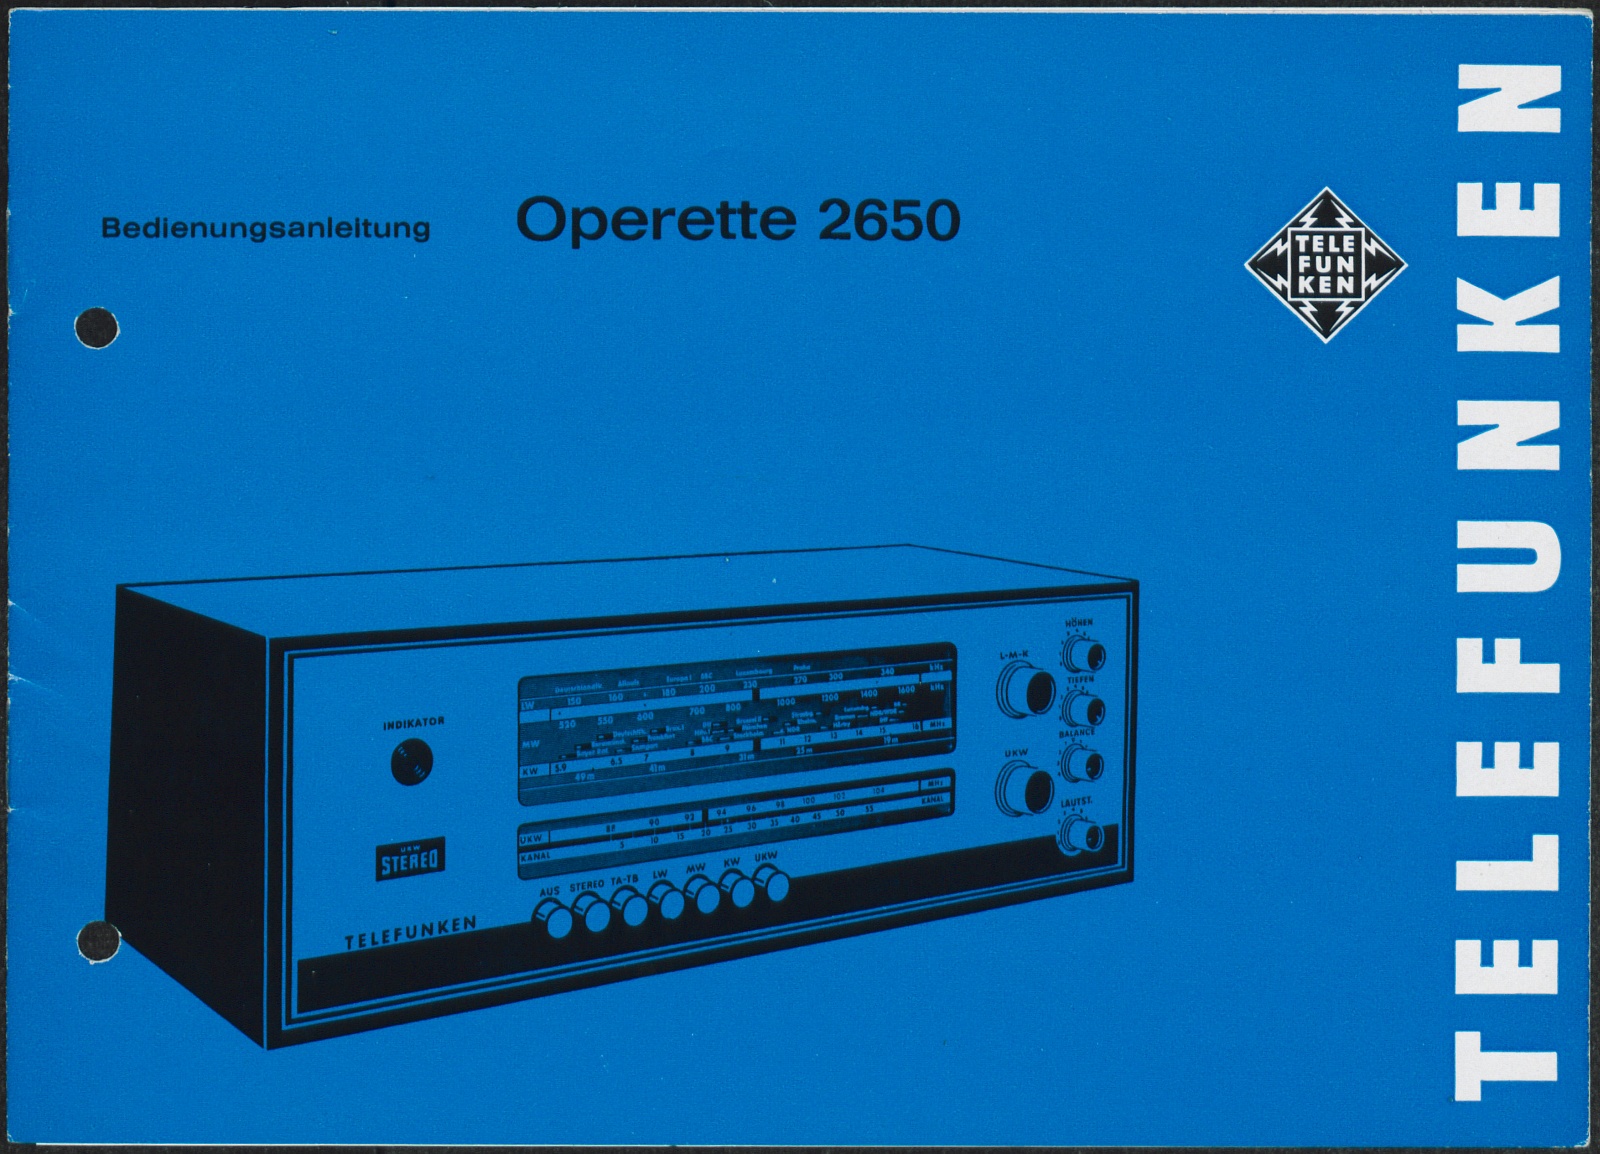 Bedienungsanleitung: Bedienungsanleitung Telefunken Operette 2650 (Stiftung Deutsches Technikmuseum Berlin CC0)